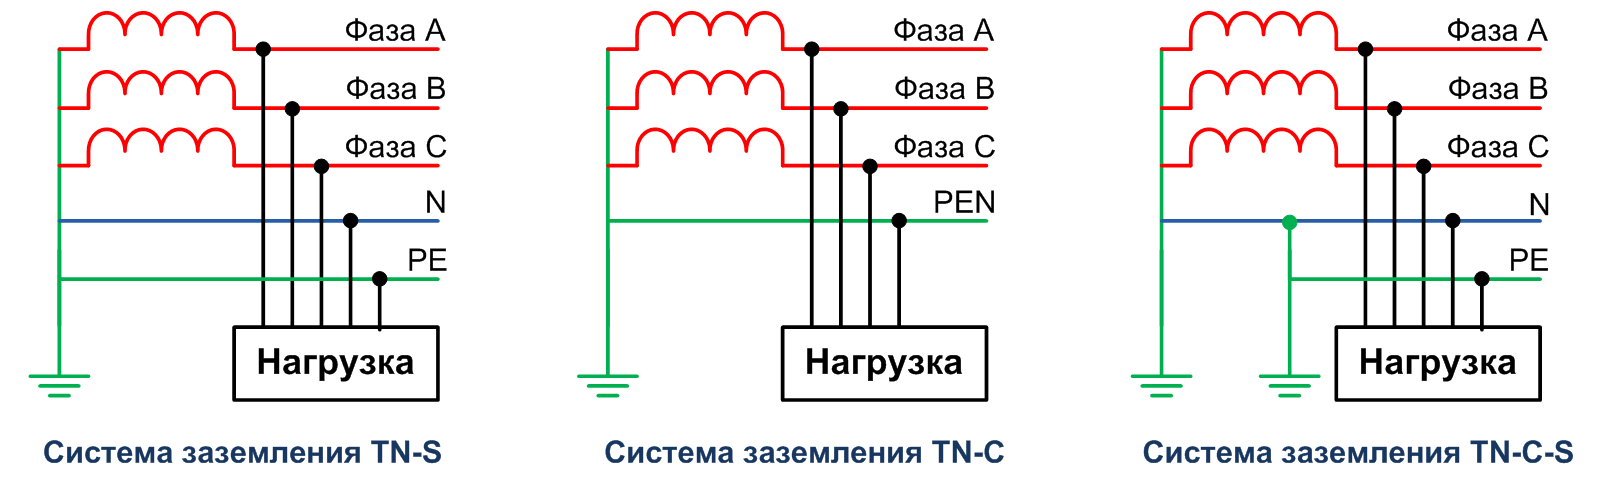 Система заземления TN-S в которой нулевой защитный N и рабочий PE проводники разделены на всем протяжении Схема заземления TN-S для частного дома согласно ПУЭ